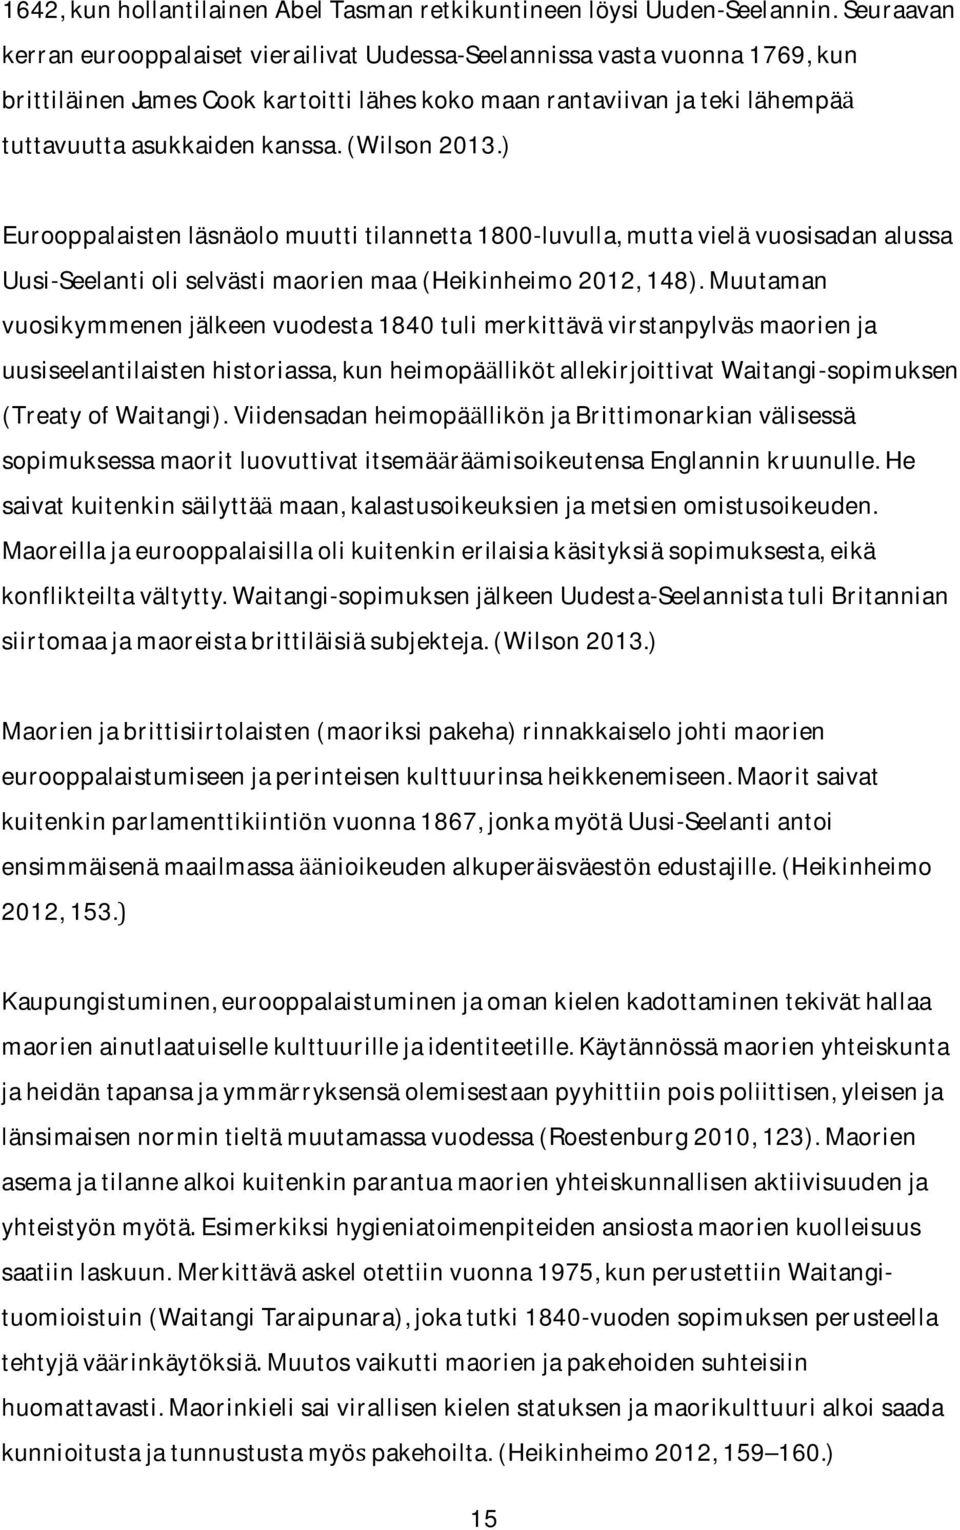 ) Eurooppalaistenlasnaolomuuttitilannetta1800-luvulla,muttavielavuosisadanalussa Uusi-Seelantioliselvastimaorienmaa(Heikinheimo2012,148).